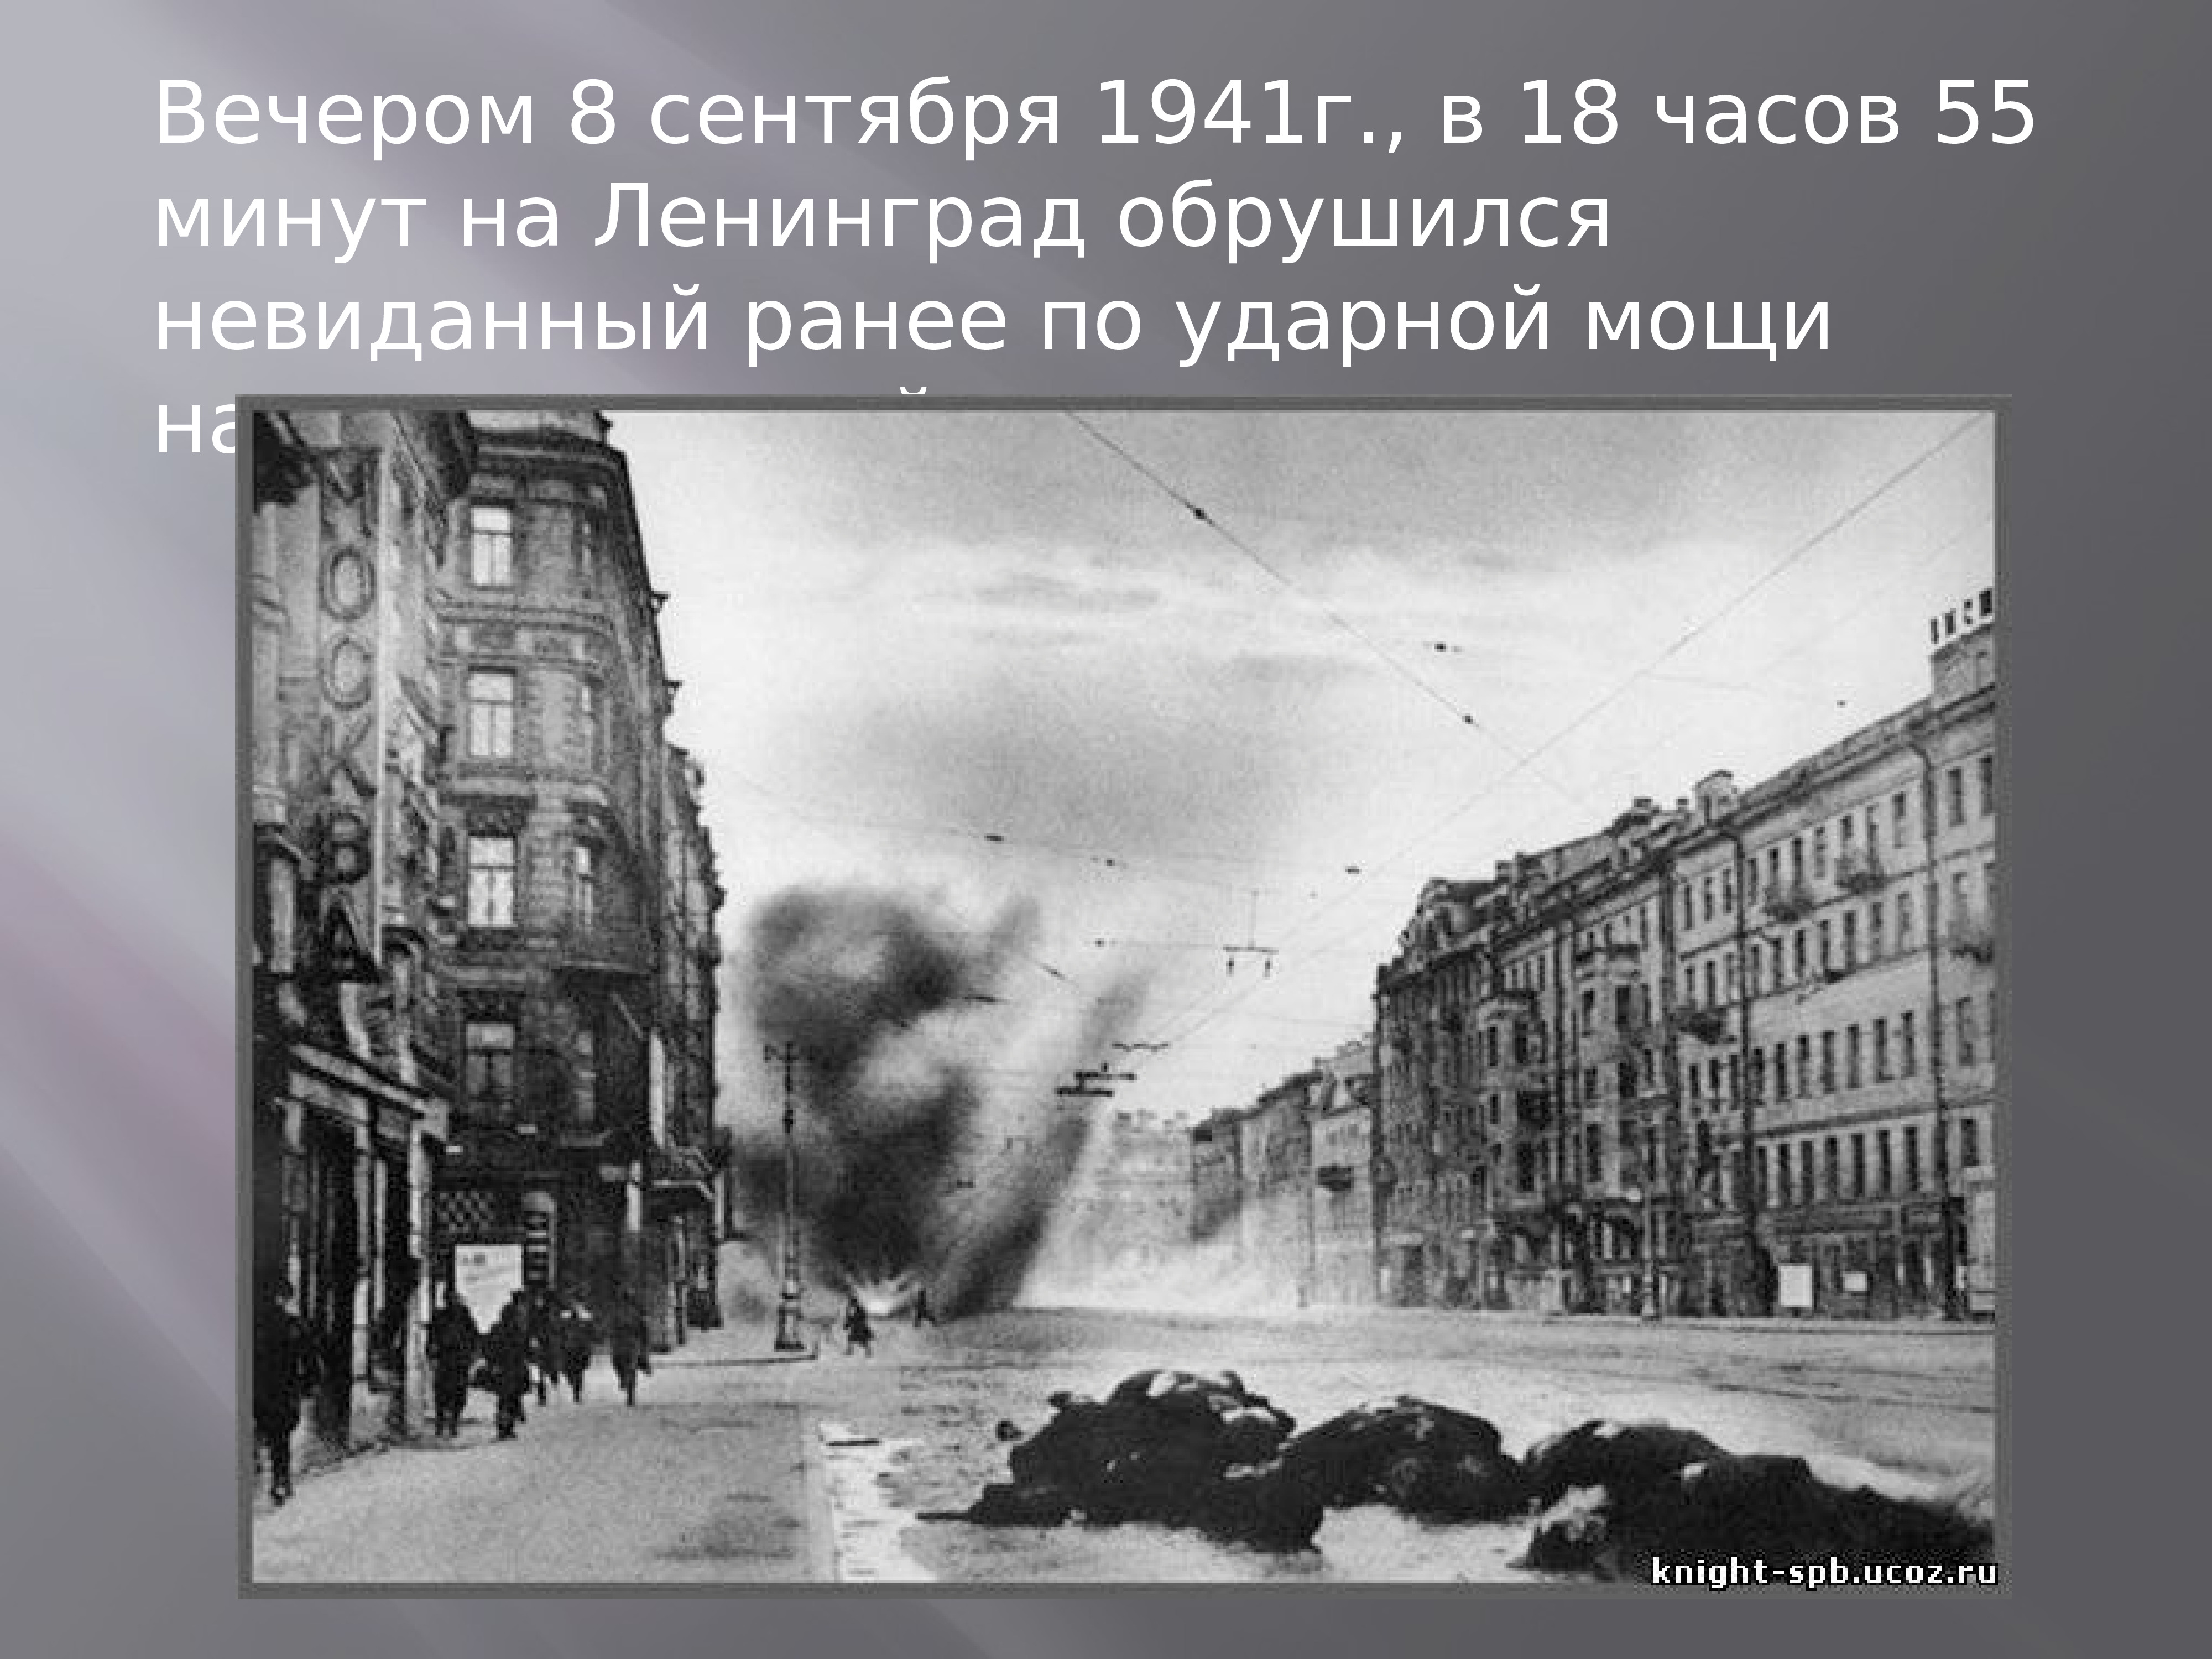 Когда фашисты окружили ленинград. Ленинград 1945. Ленинград город 1941 года немцы.